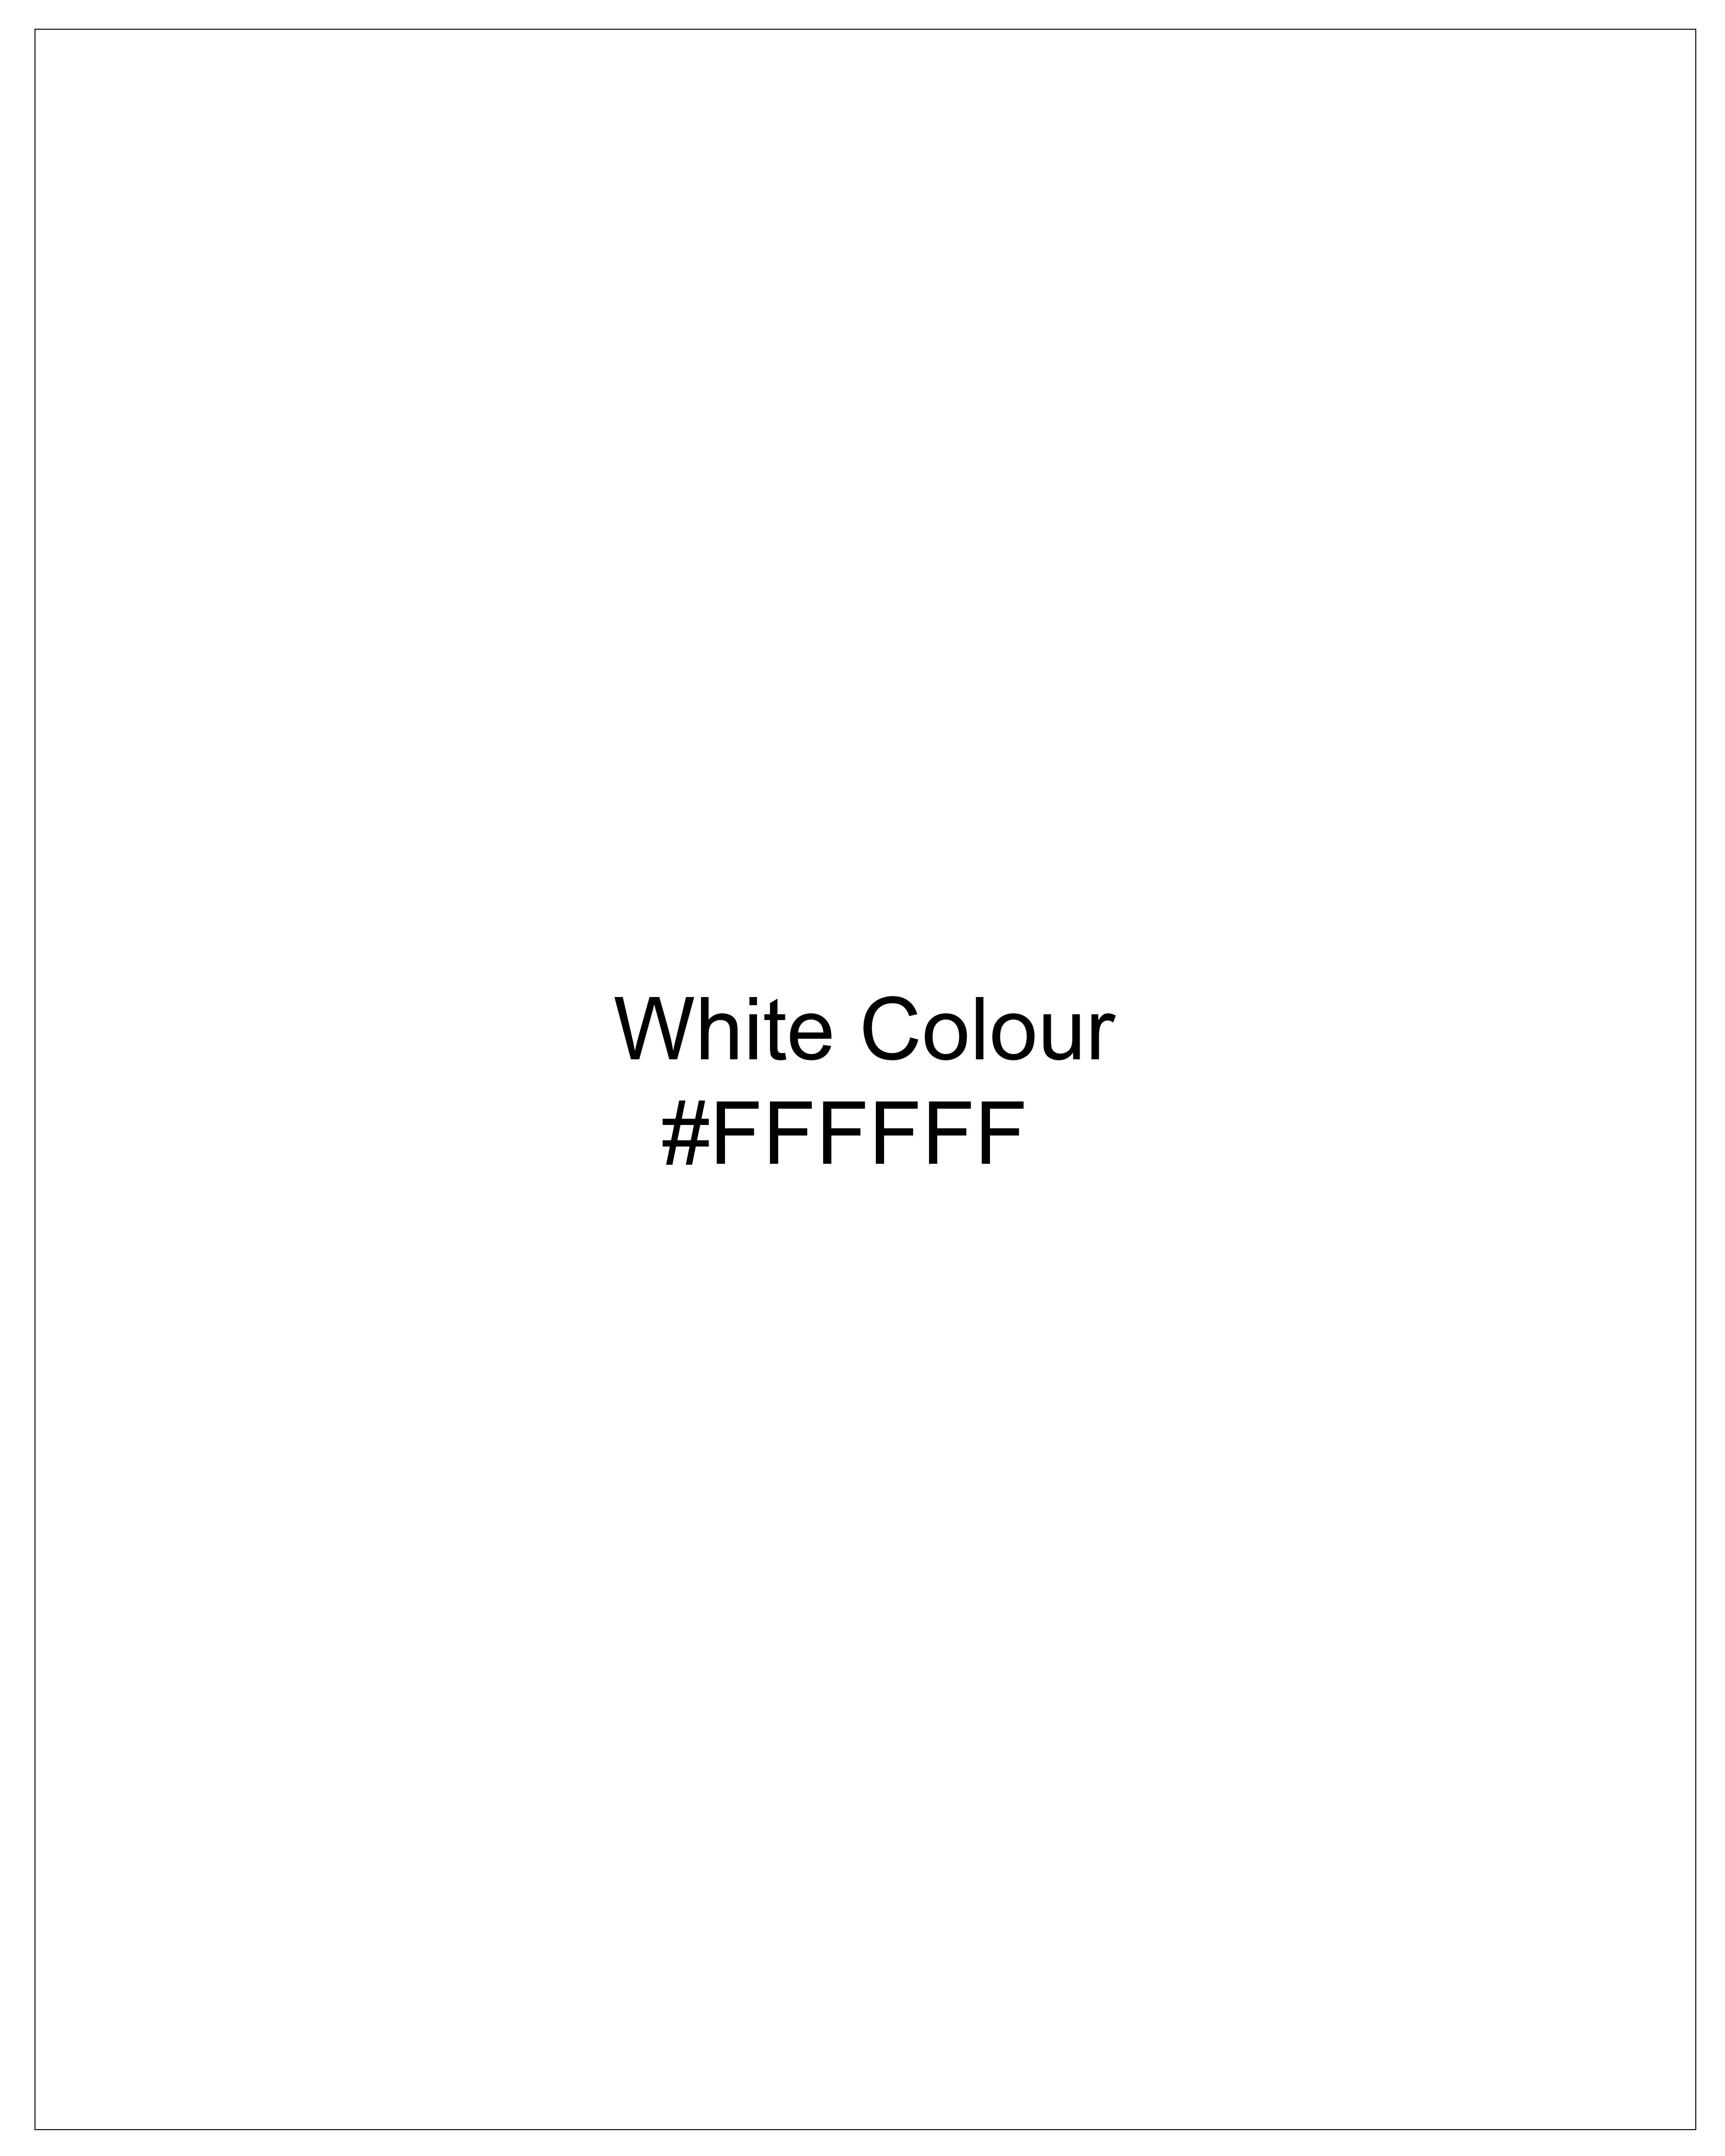 Bright White Rinse Wash Hand Painted Denim J100-ART003-30, J100-ART003-32, J100-ART003-34, J100-ART003-36, J100-ART003-38, J100-ART003-40